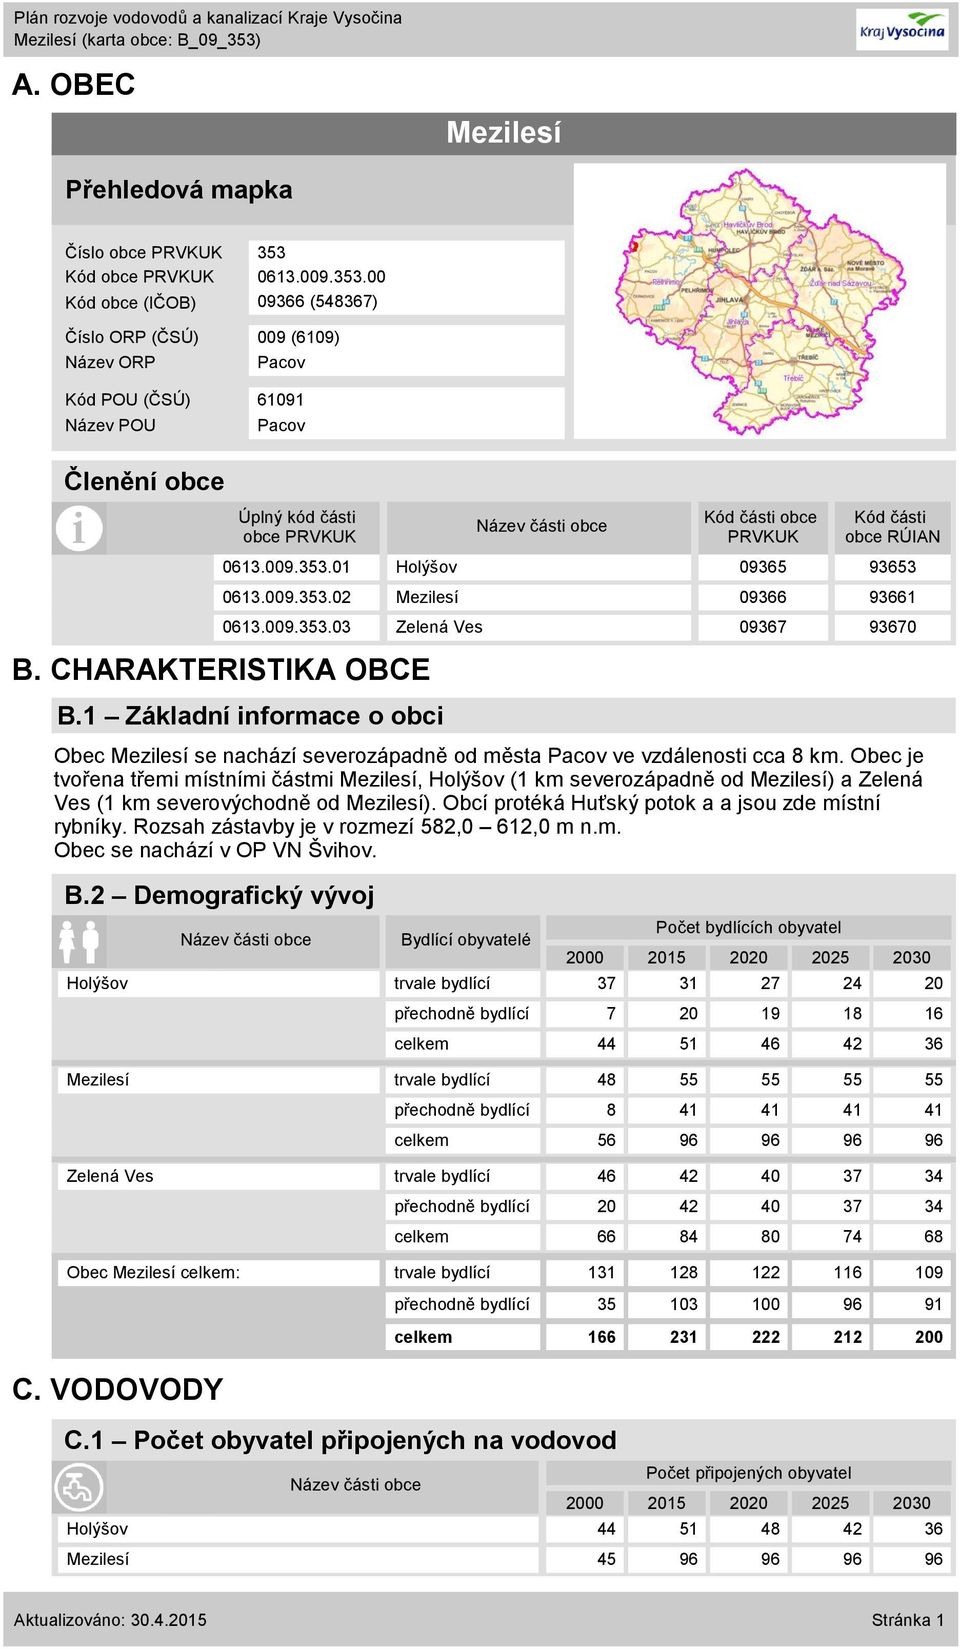 CHARAKTERISTIKA OBCE B.1 Základní informace o obci Obec Mezilesí se nachází severozápadně od města Pacov ve vzdálenosti cca 8 km.